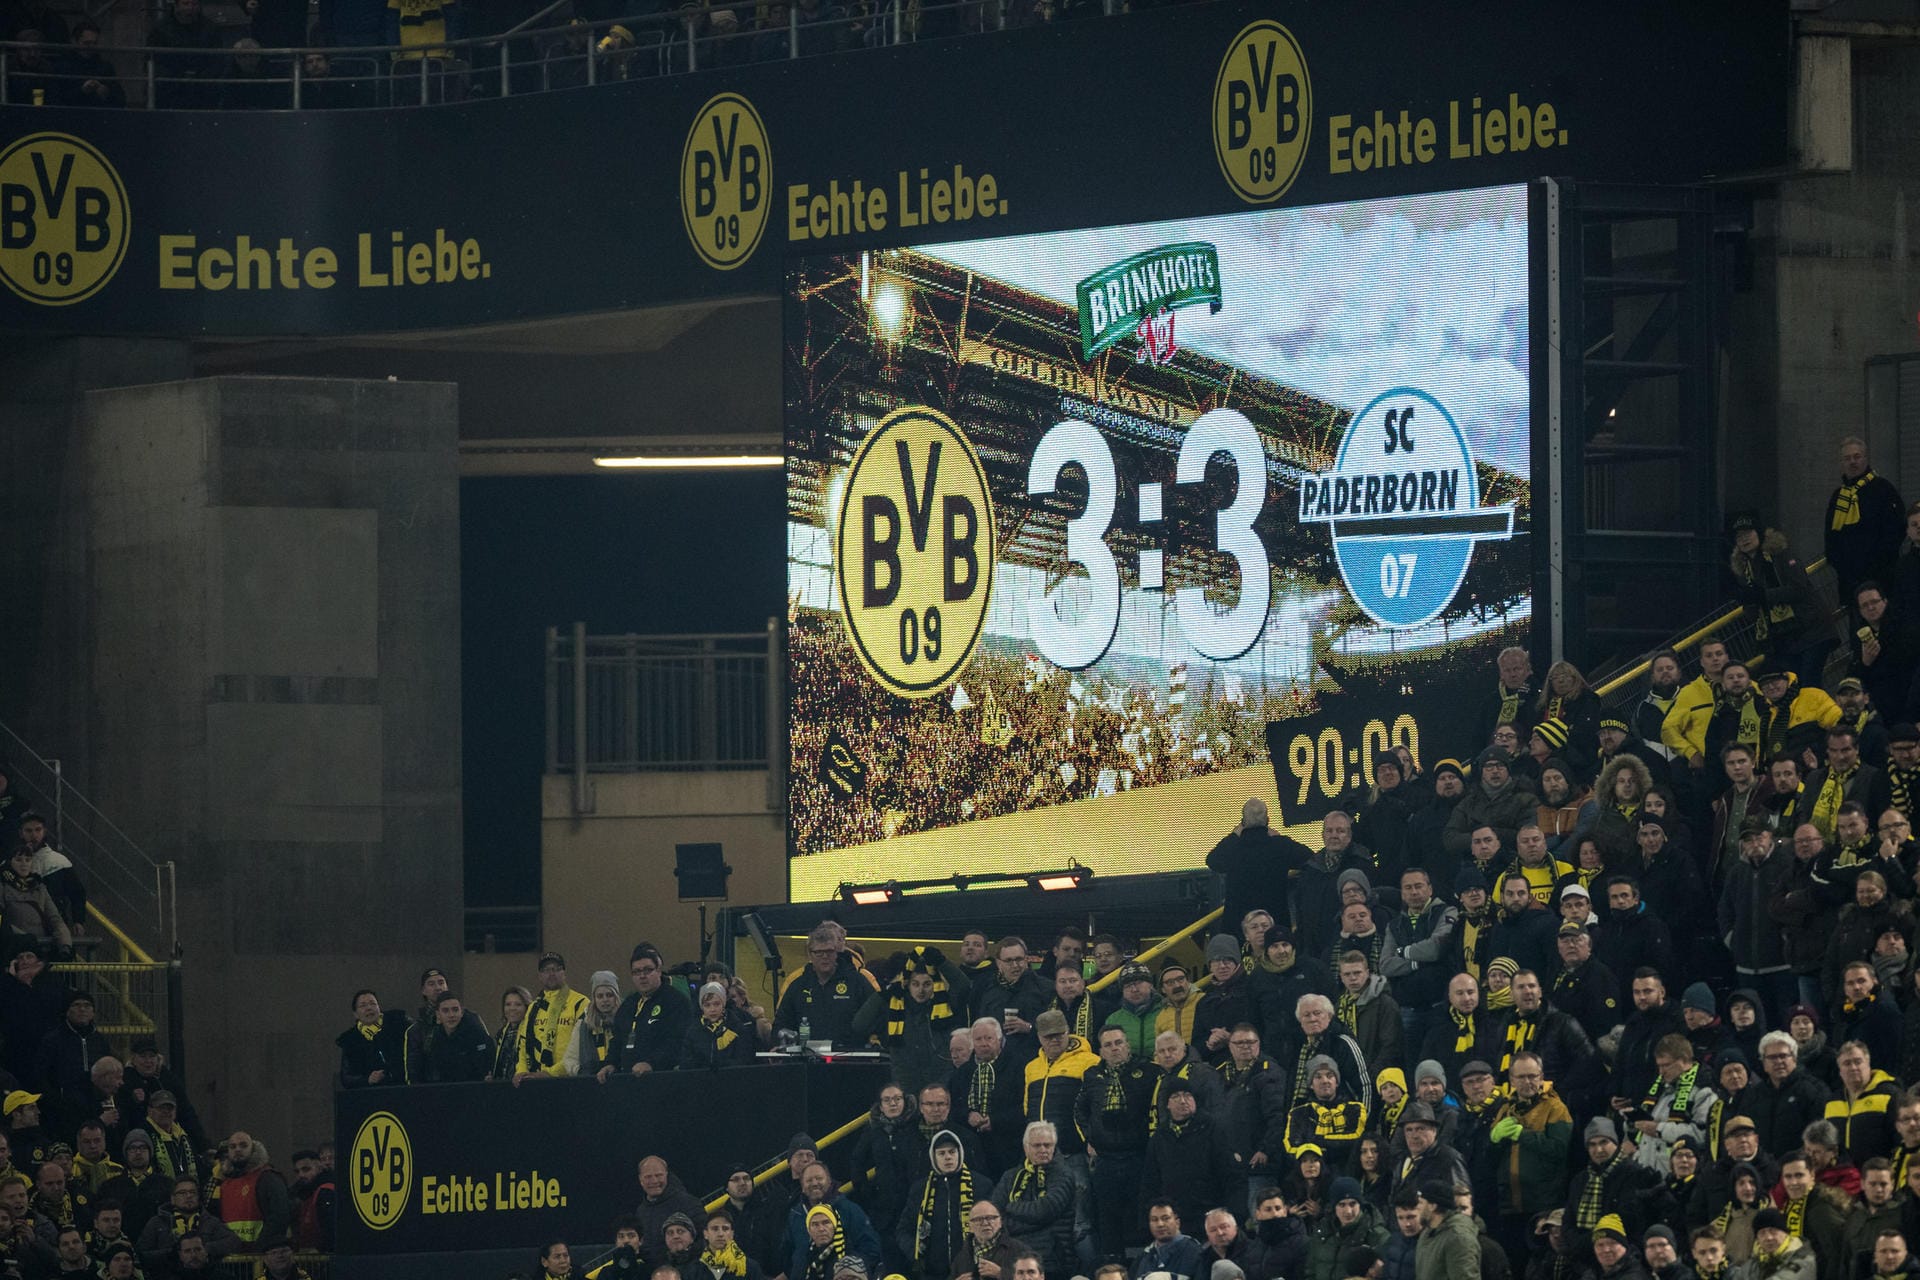 "Süddeutsche Zeitung" (Deutschland): "Dortmunds Fans haben genug: In der ersten Hälfte spielt der BVB so schwach wie lange nicht – deswegen ist das Publikum trotz des Comebacks erzürnt."